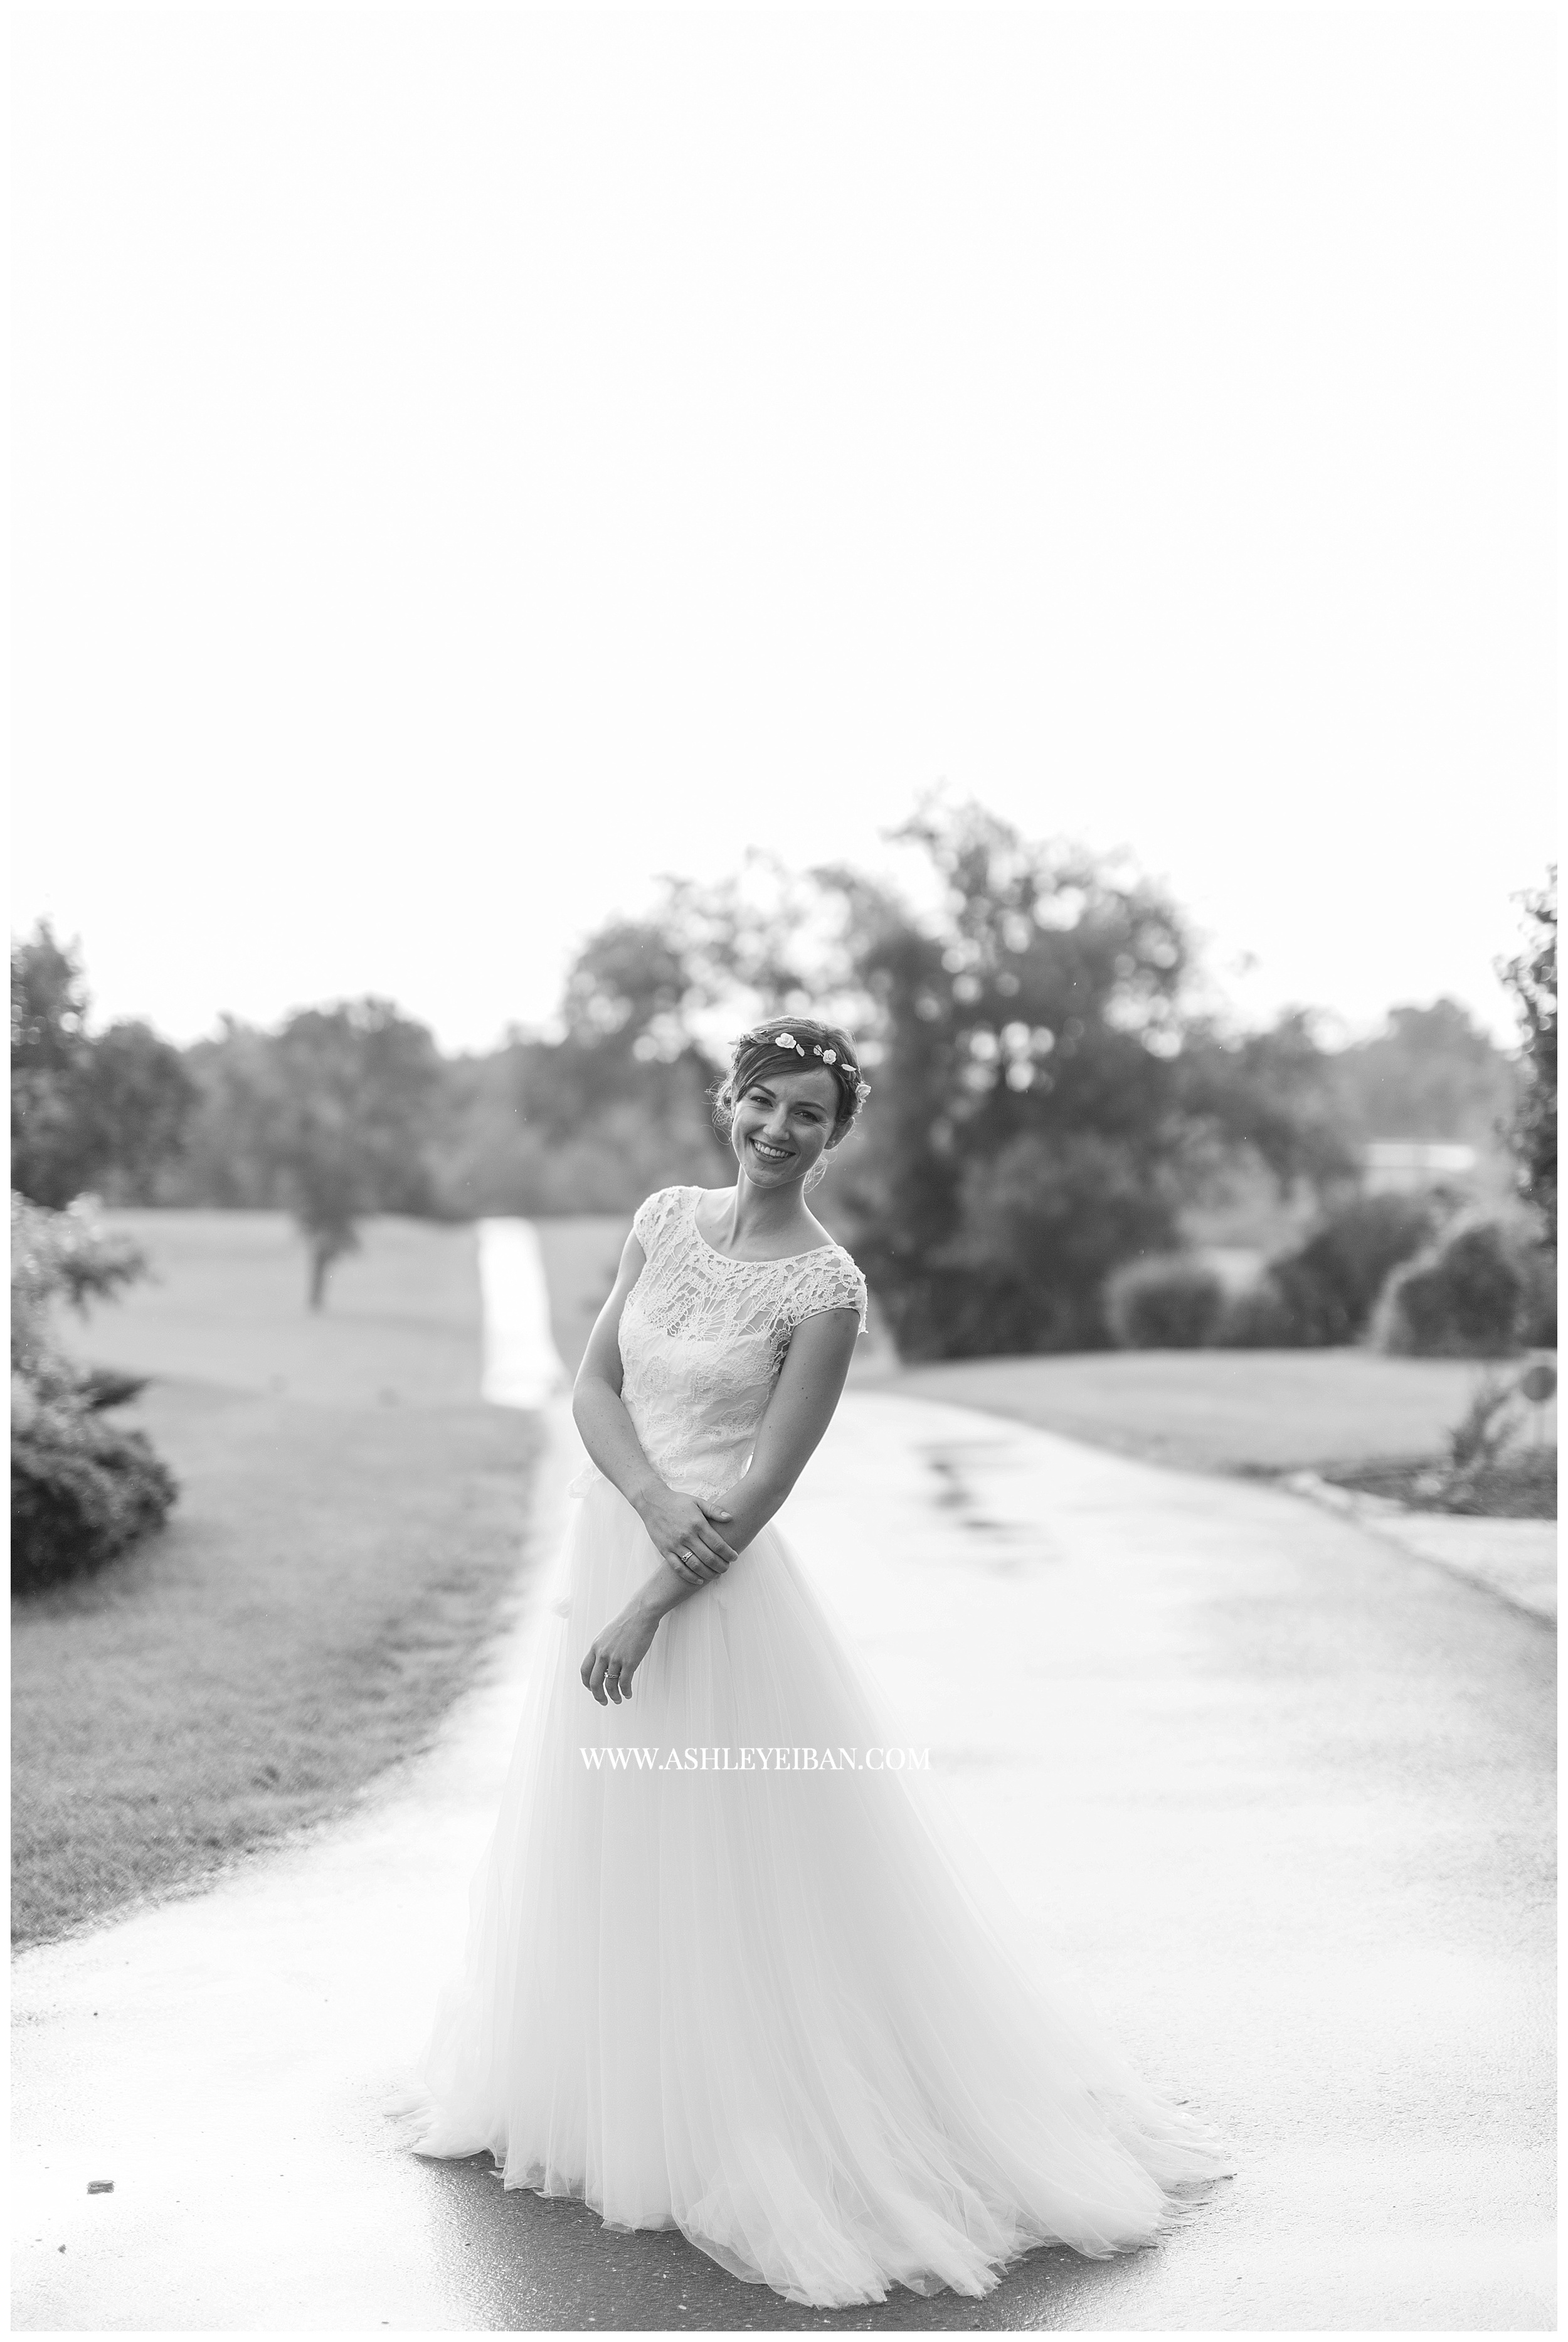 Lynchburg Wedding Photographer || Backyard Wedding || Ashley Eiban Photography || www.ashleyeiban.com